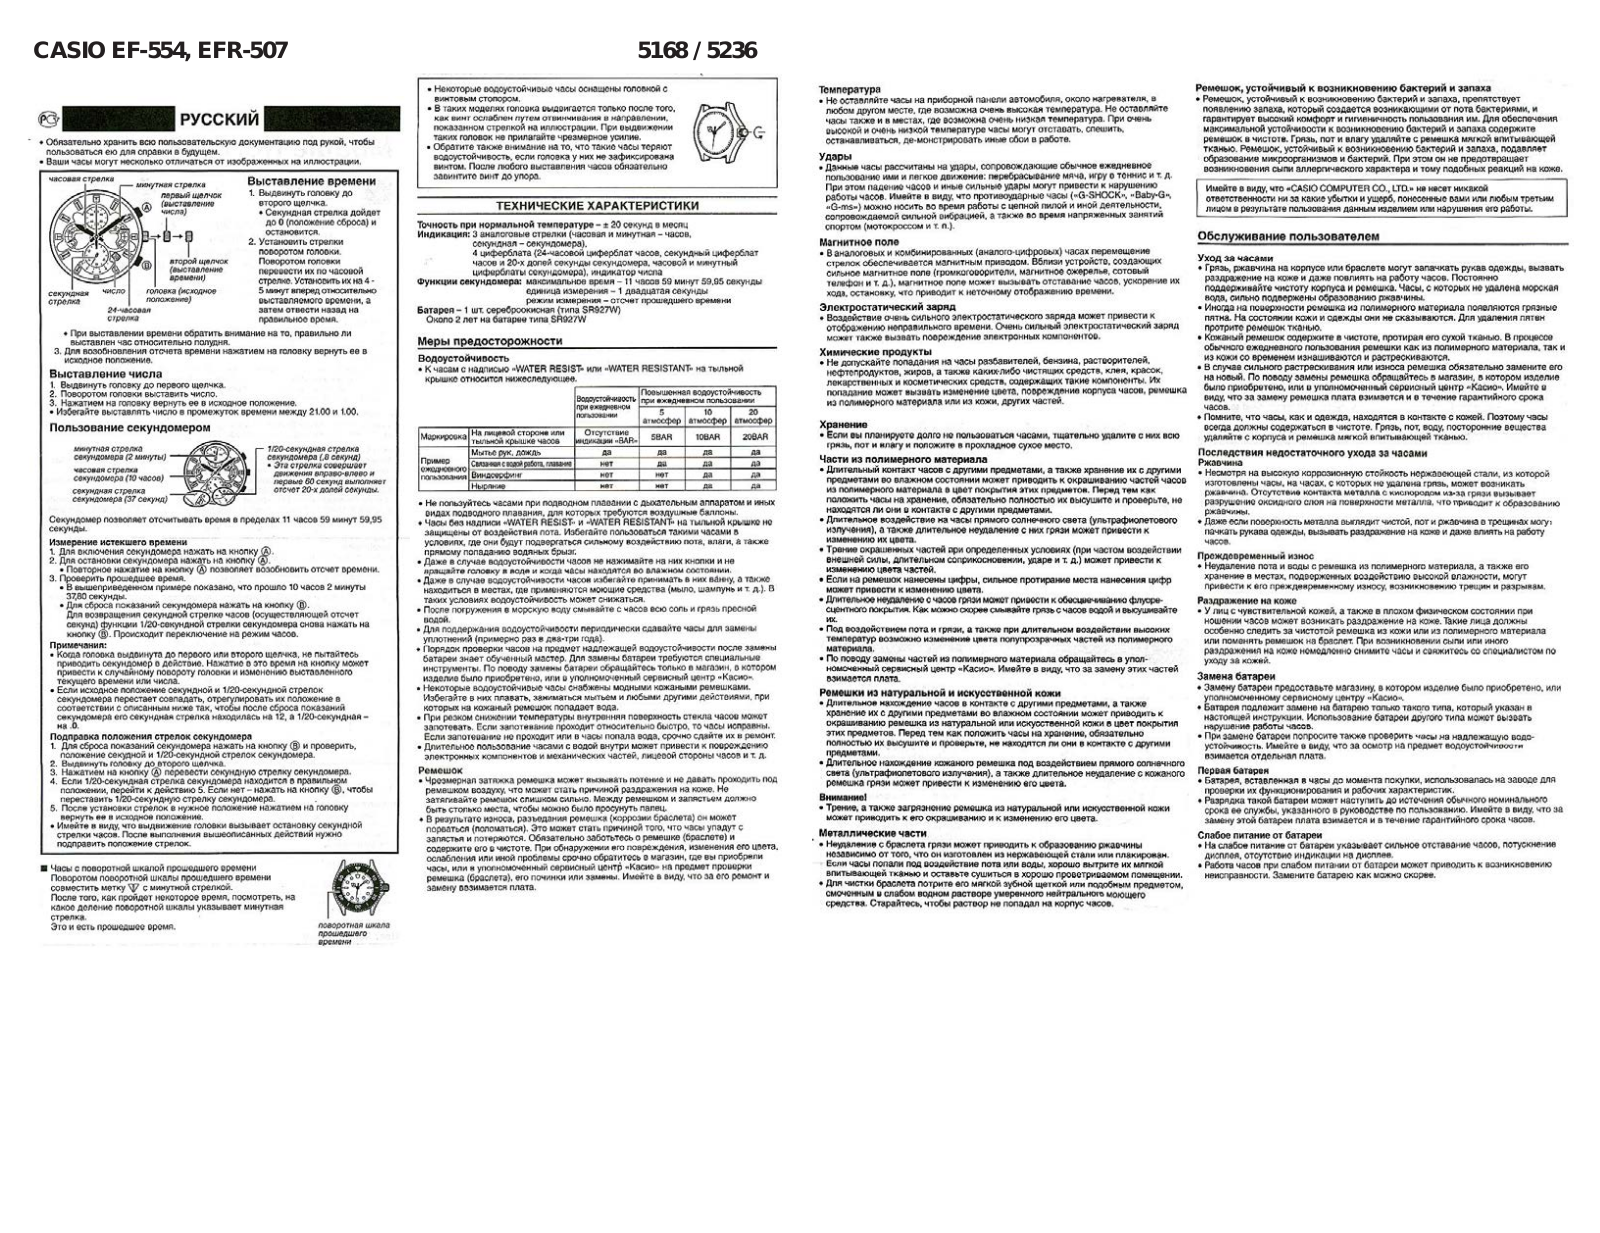 CASIO EF-554 User Manual